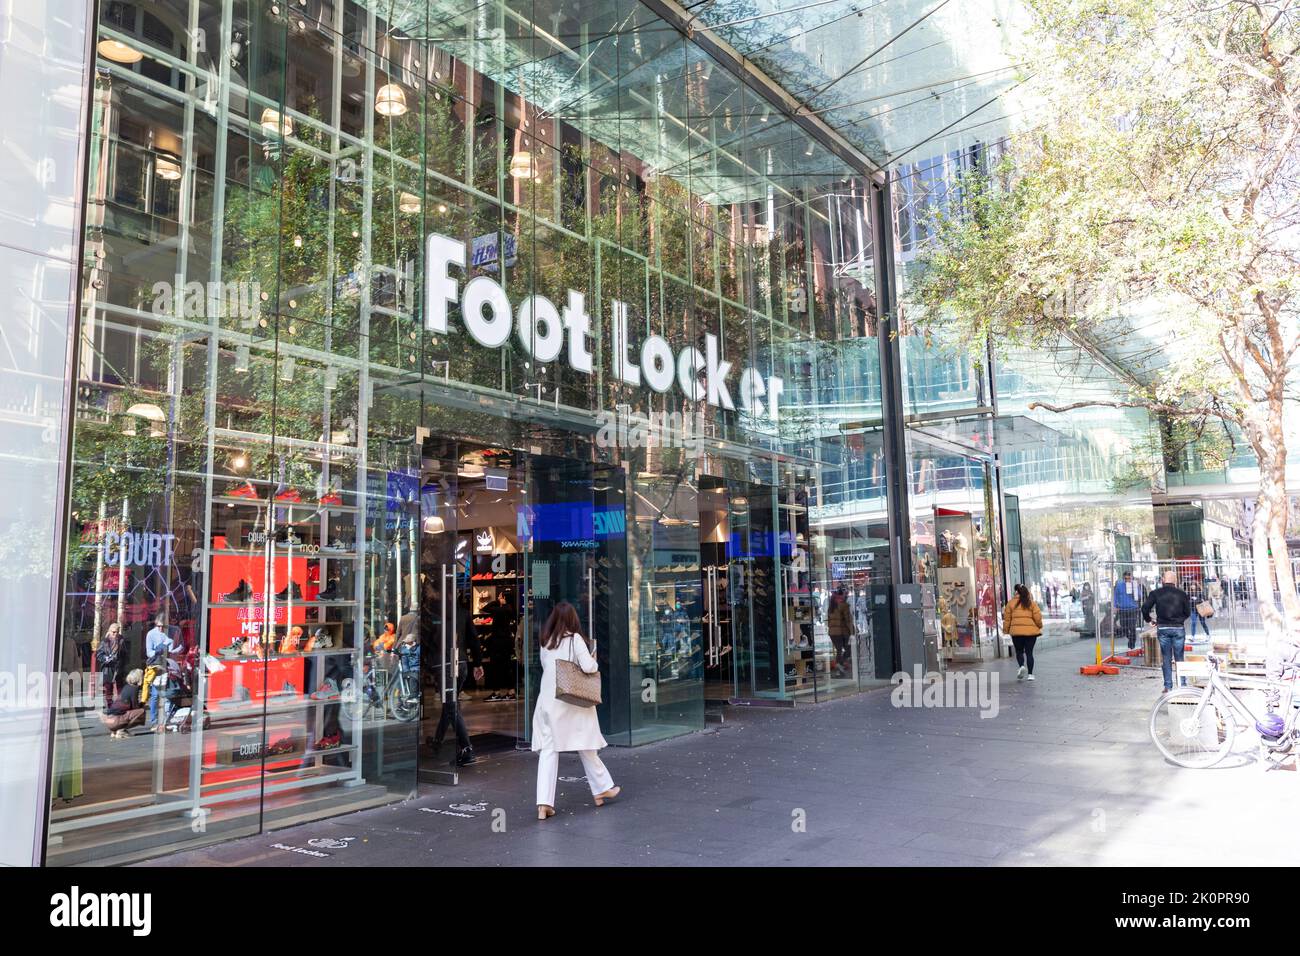 Foot Locker Store Shop In Pitt Street Sydney City Centrenswaustralia 2K0PR90 